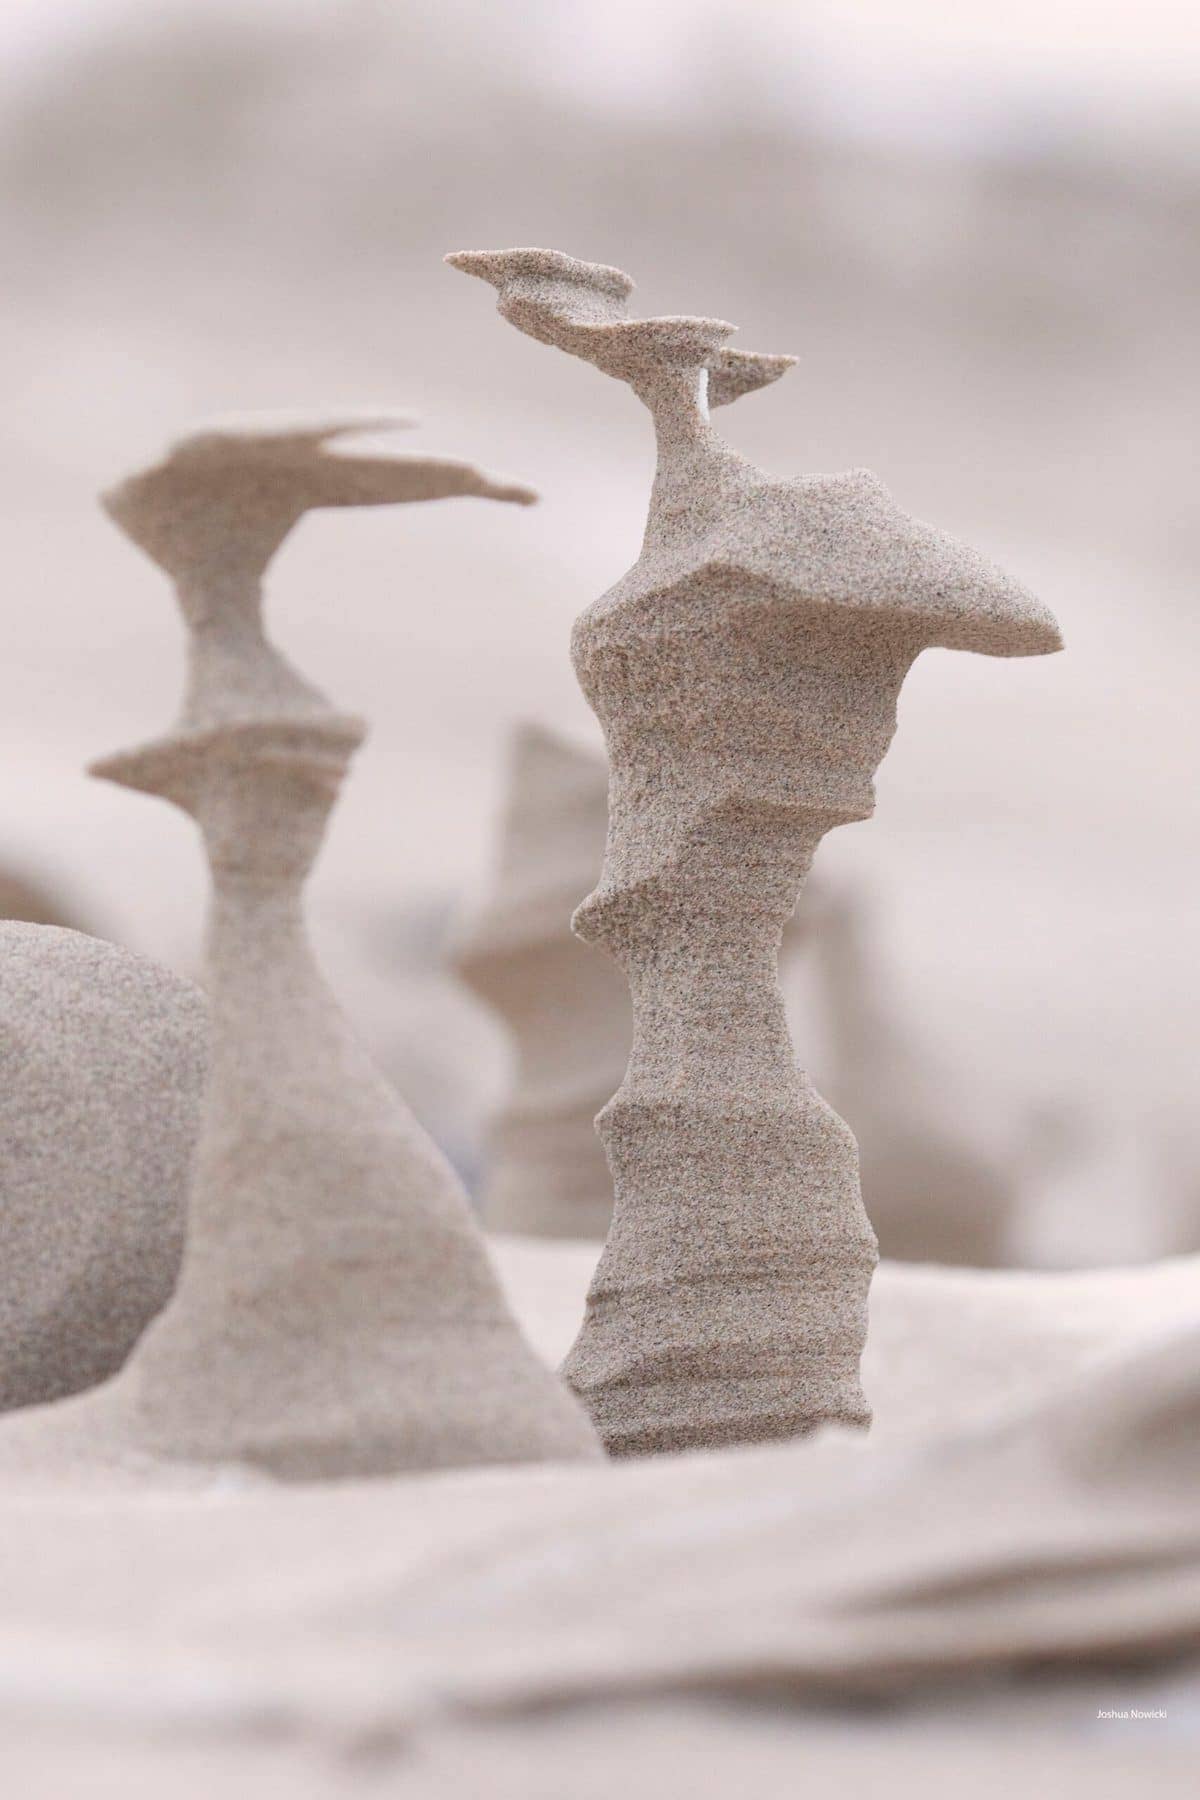 자연이 만들어낸 신비의 모래 층 Powerful Winds Carve Surreal Sand Sculptures Across a Frozen Beach